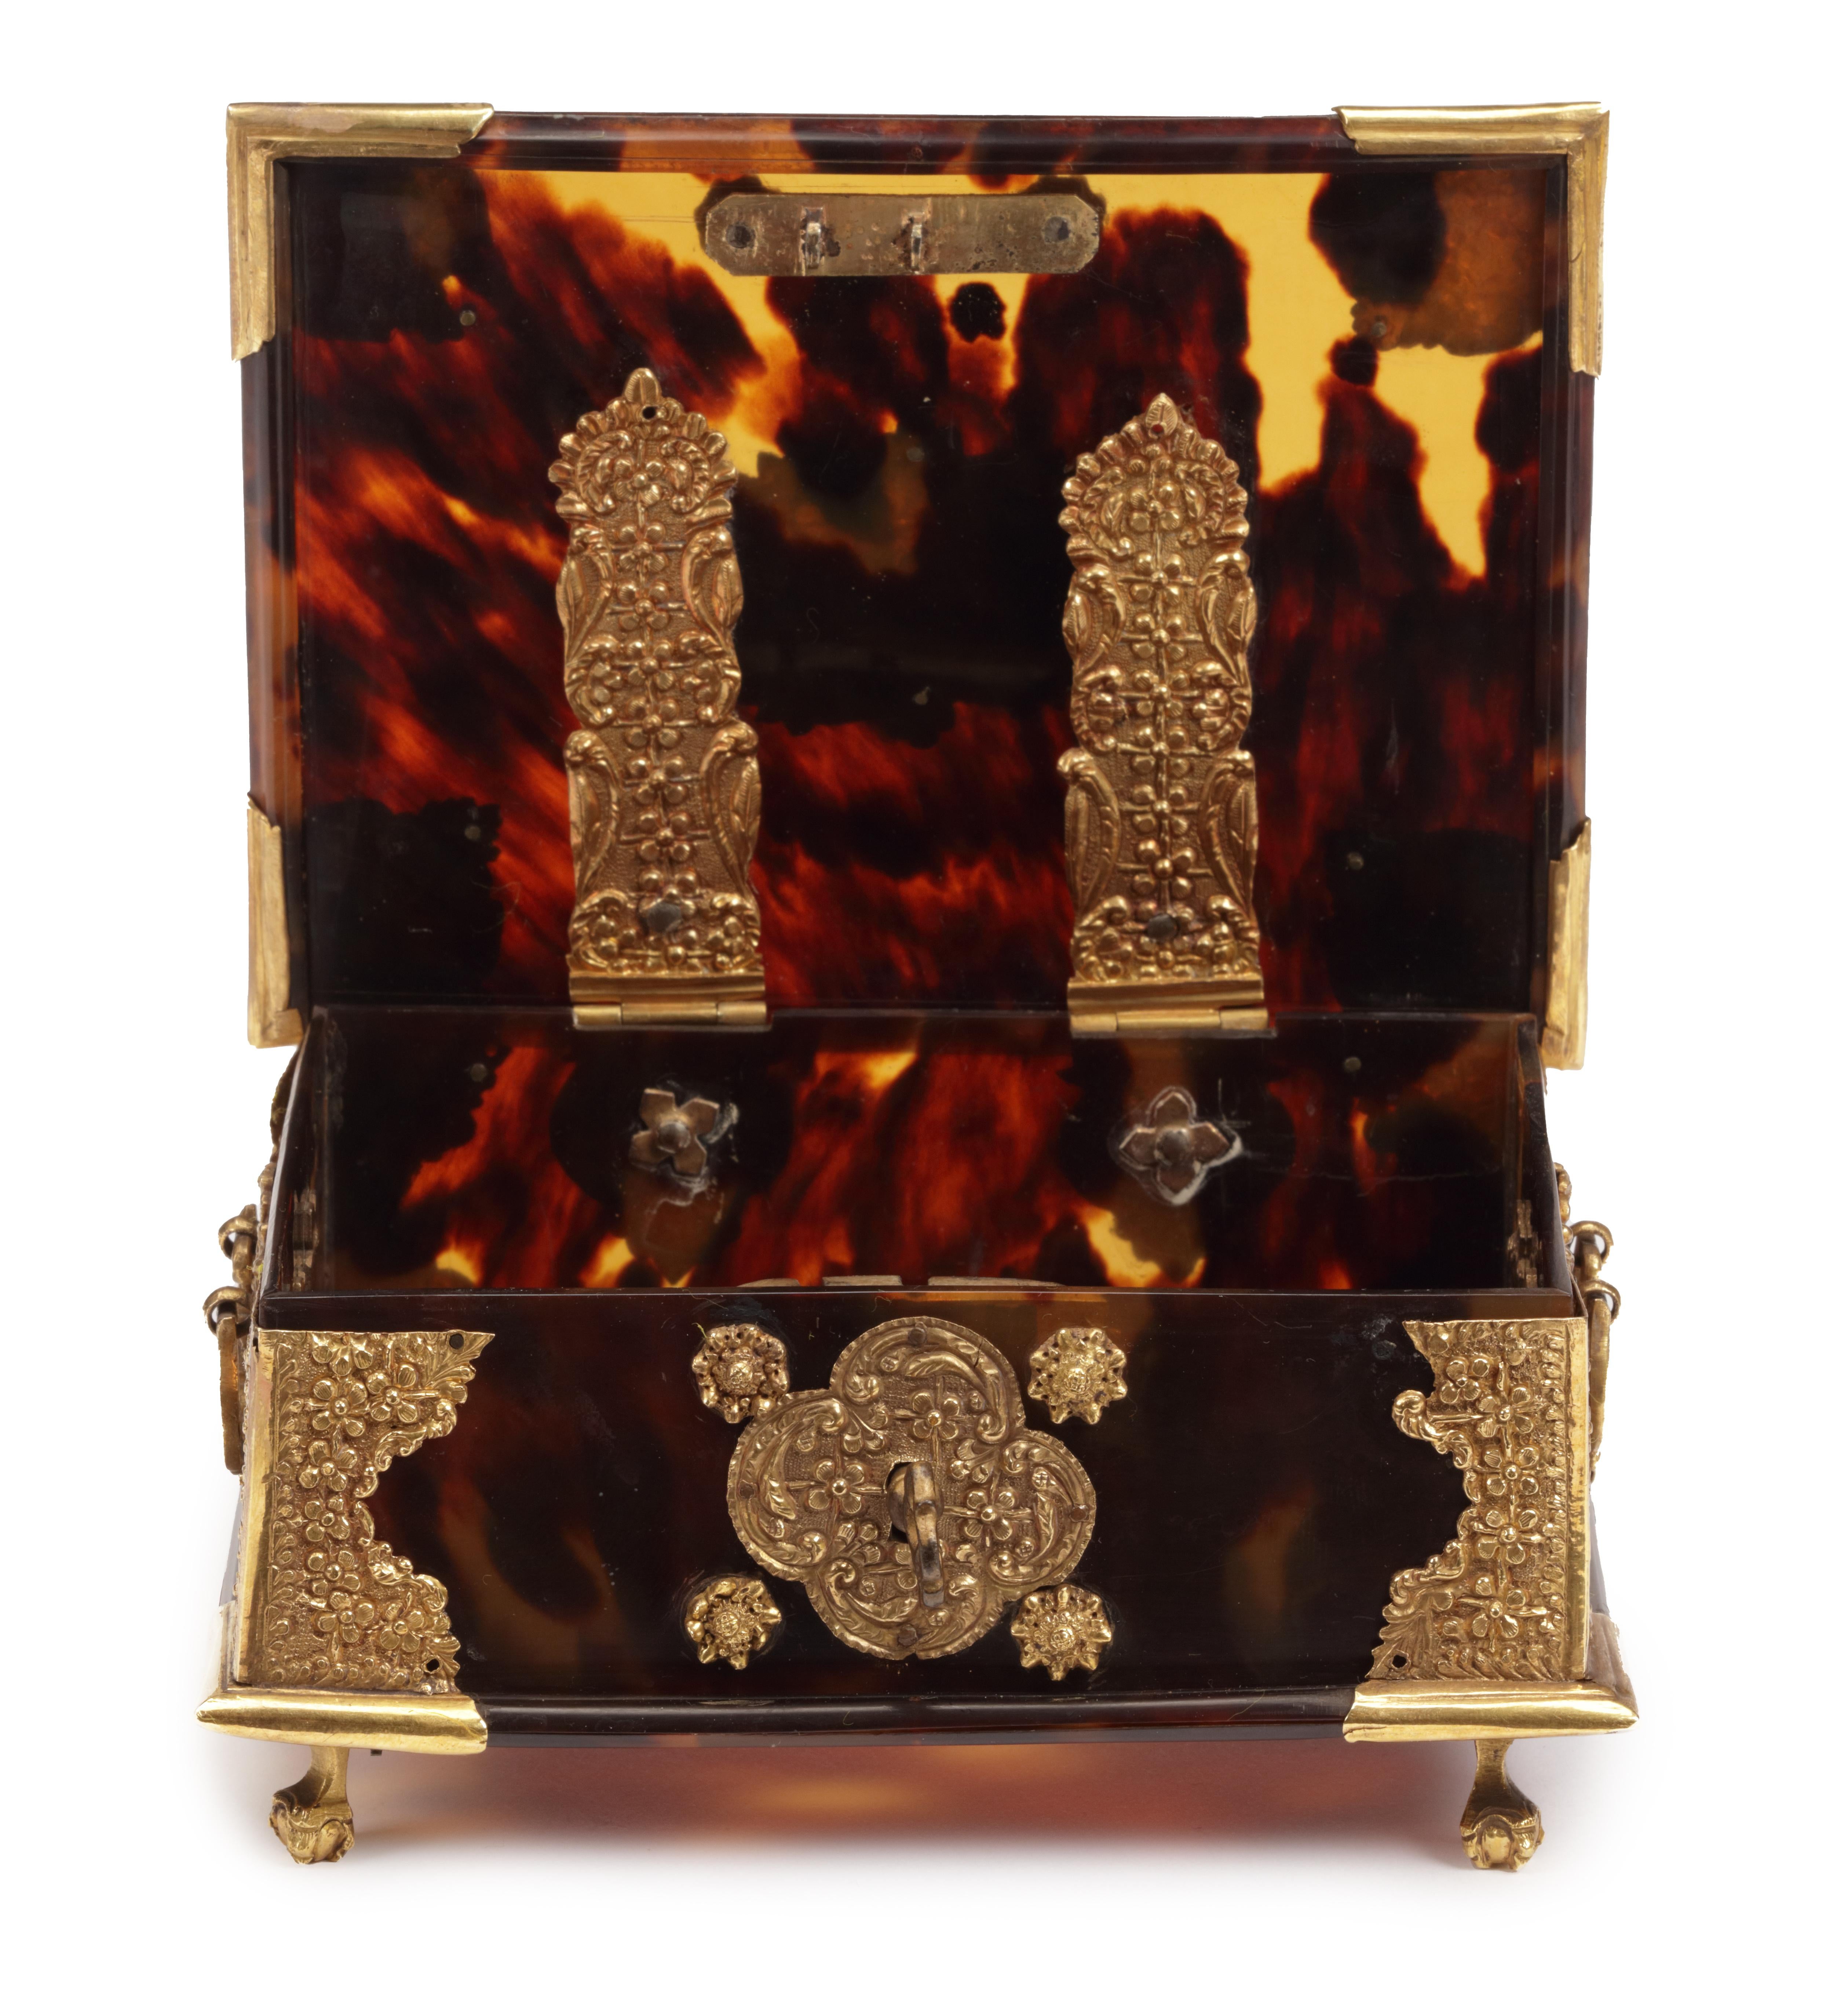 Jakarta (Batavia), 18. Jahrhundert, anscheinend nicht gekennzeichnet

L. 14 x B. 9,5 x H. 4,7 cm

Bevor man sich in den ehemaligen Niederländisch-Ostindien niederließ, musste Sirih in den erlesensten Kisten aus Gold, Silber, mit Edelsteinen,